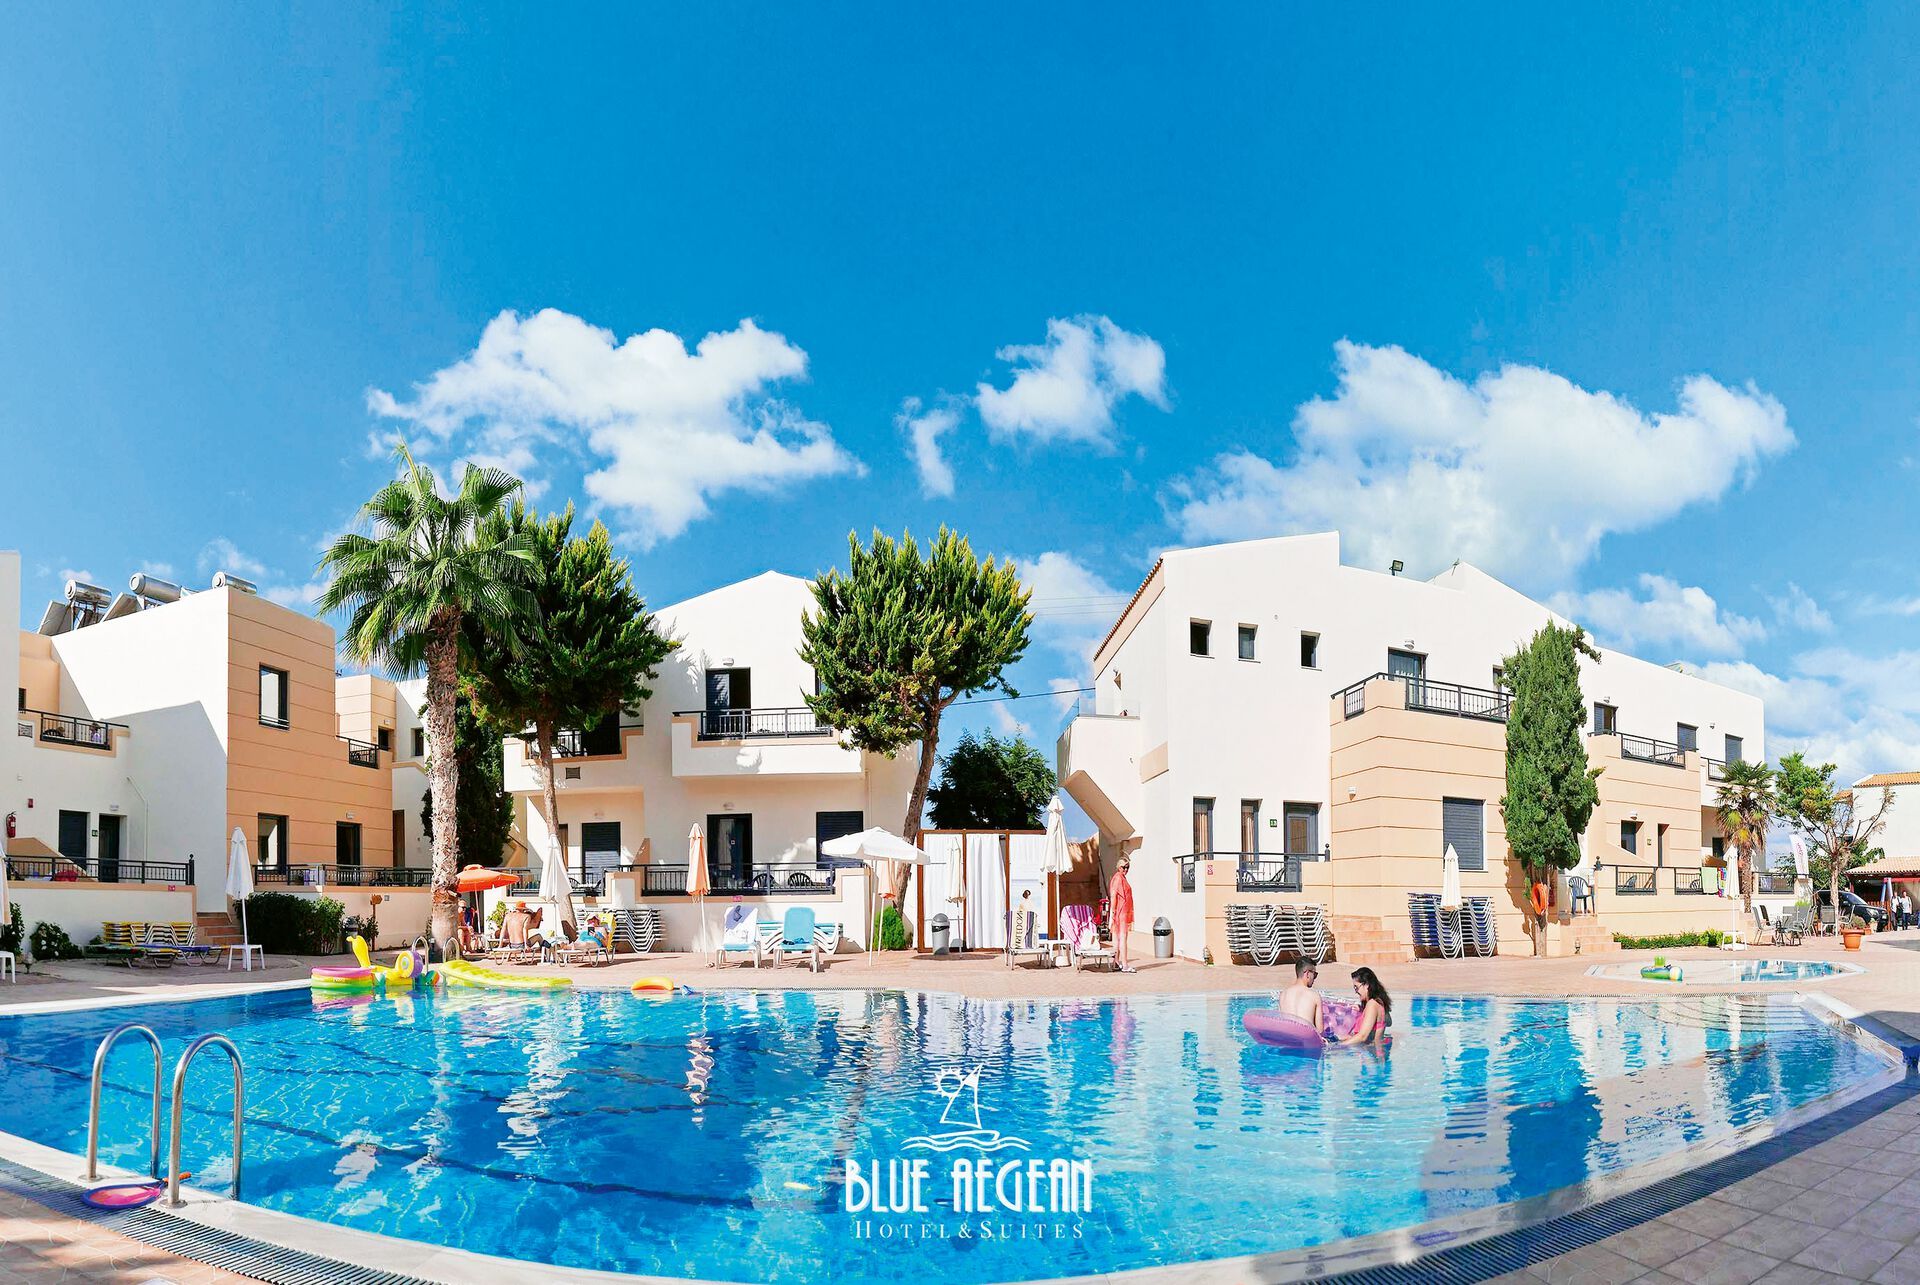 Blue Aegean Hotel & Suites - 4*